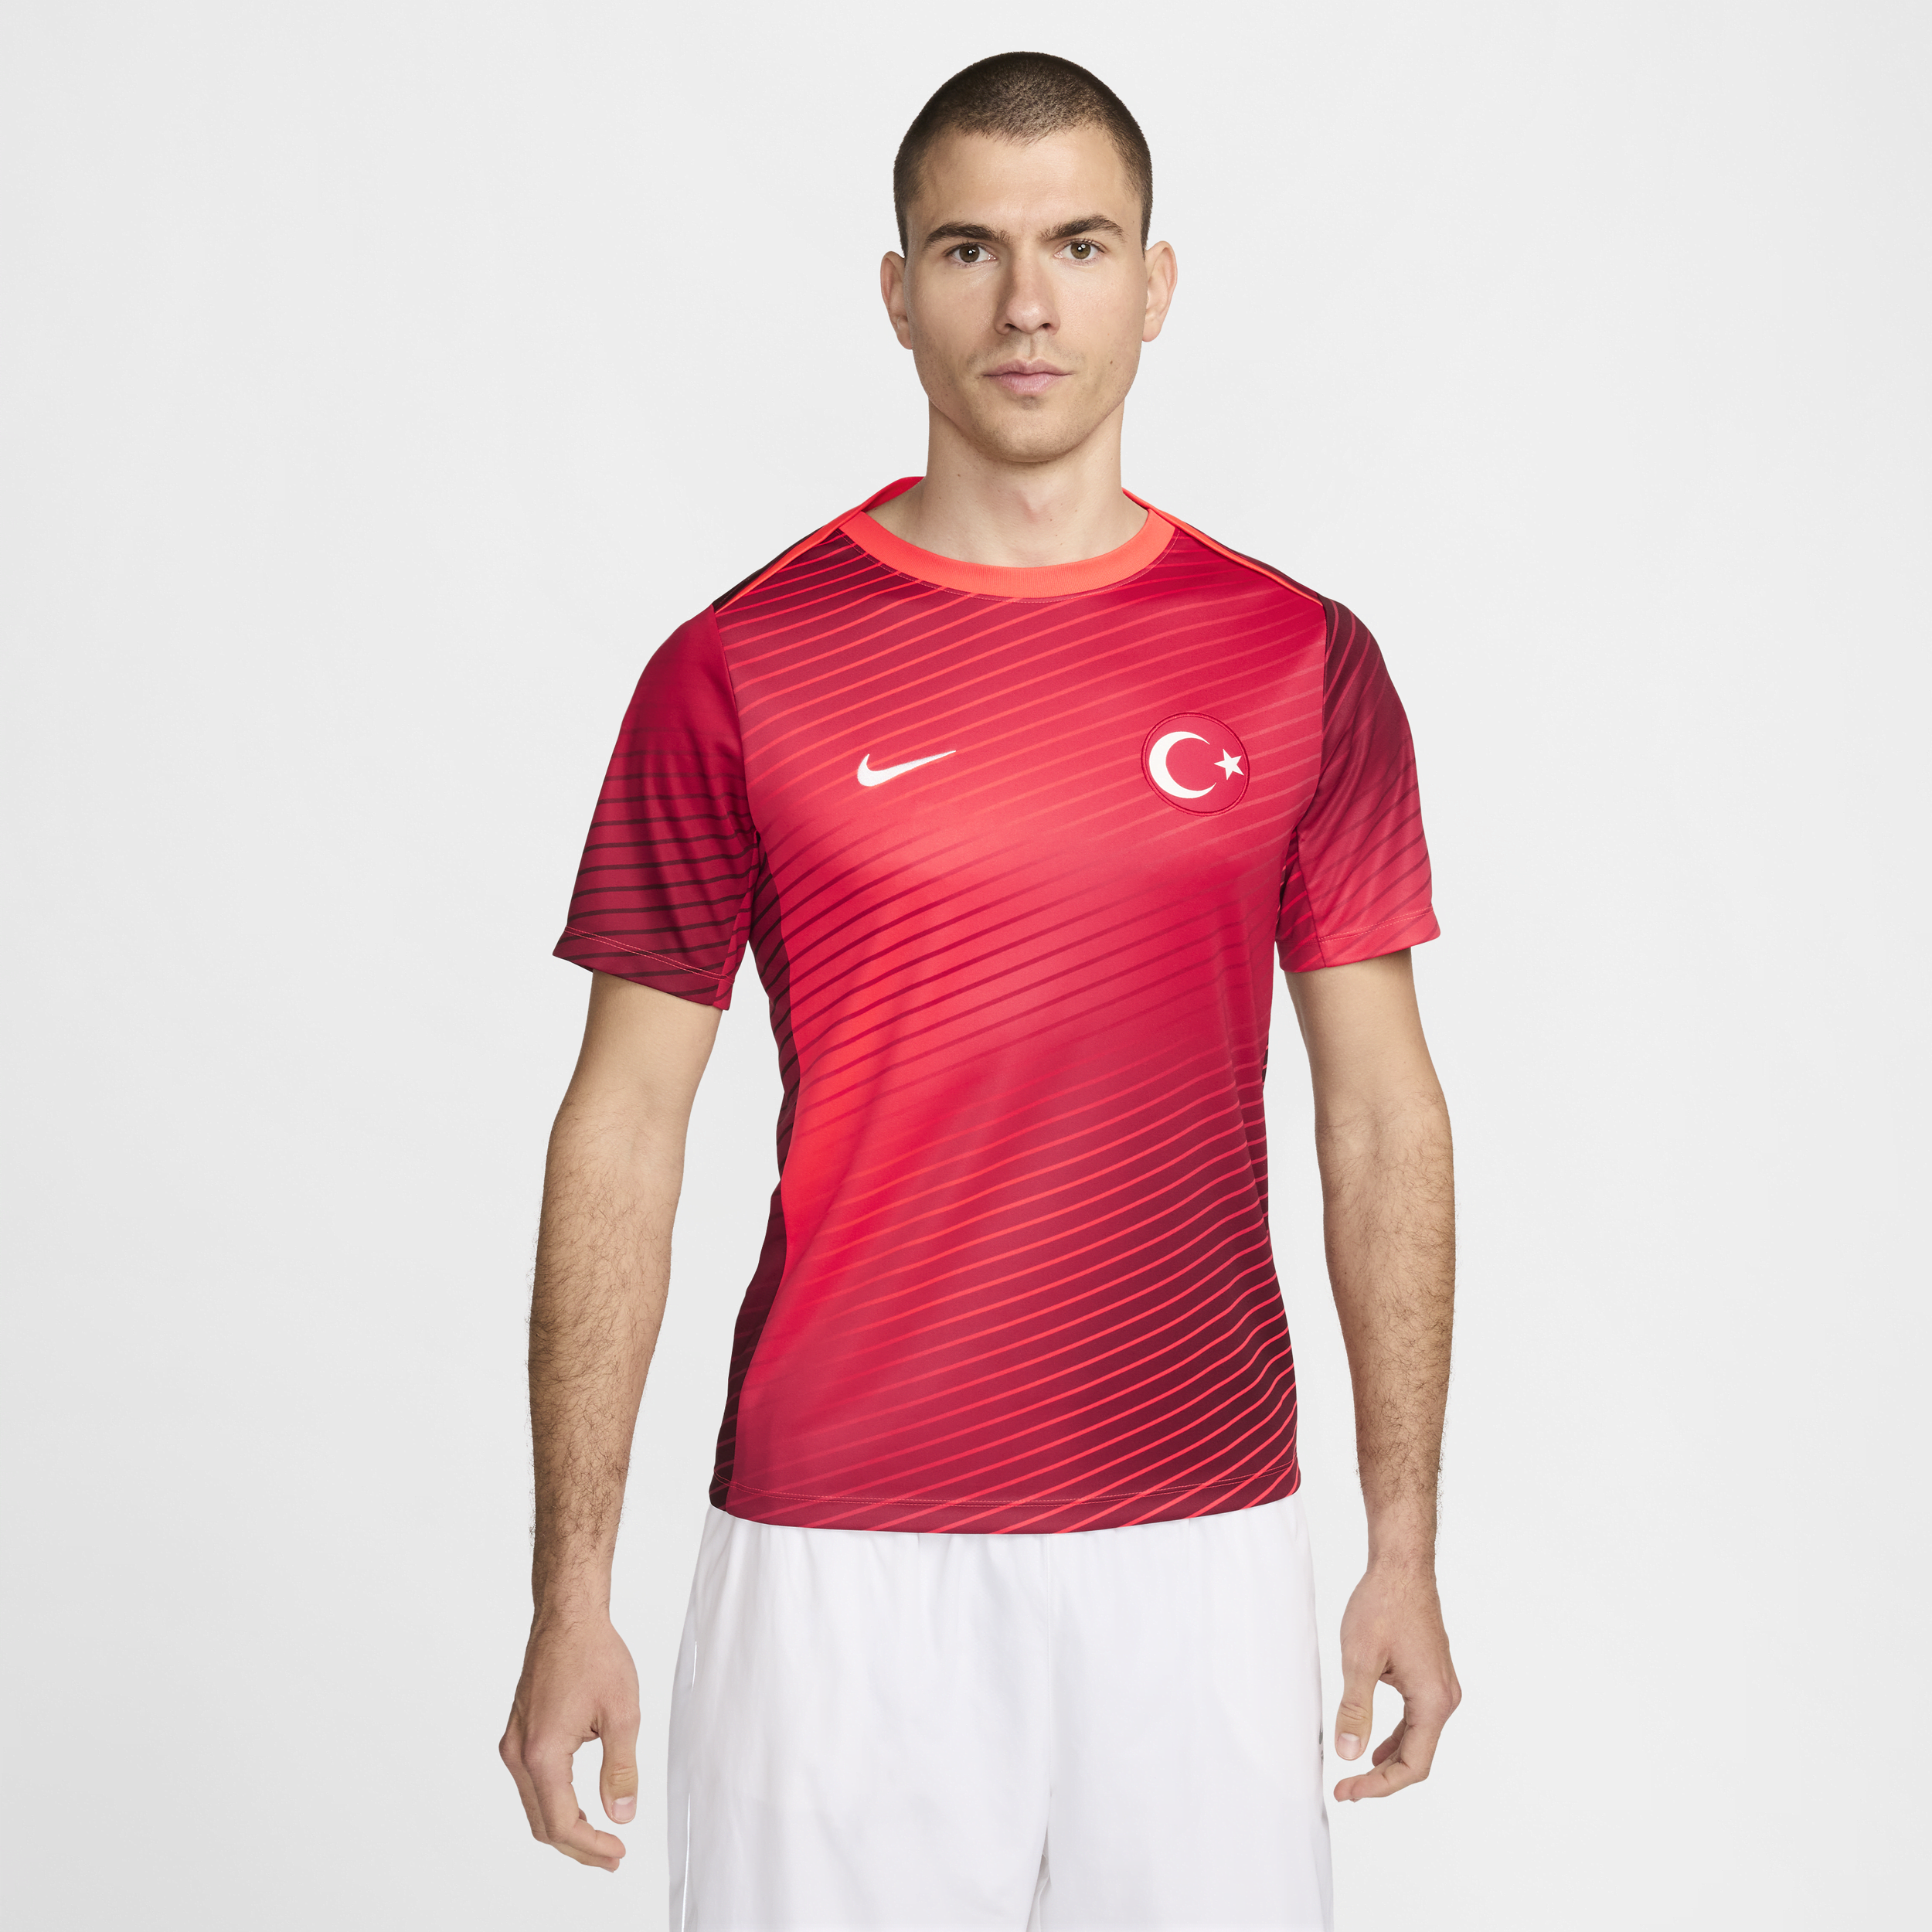 Turkije Academy Pro Nike Dri-FIT voetbaltop met korte mouwen voor heren - Rood